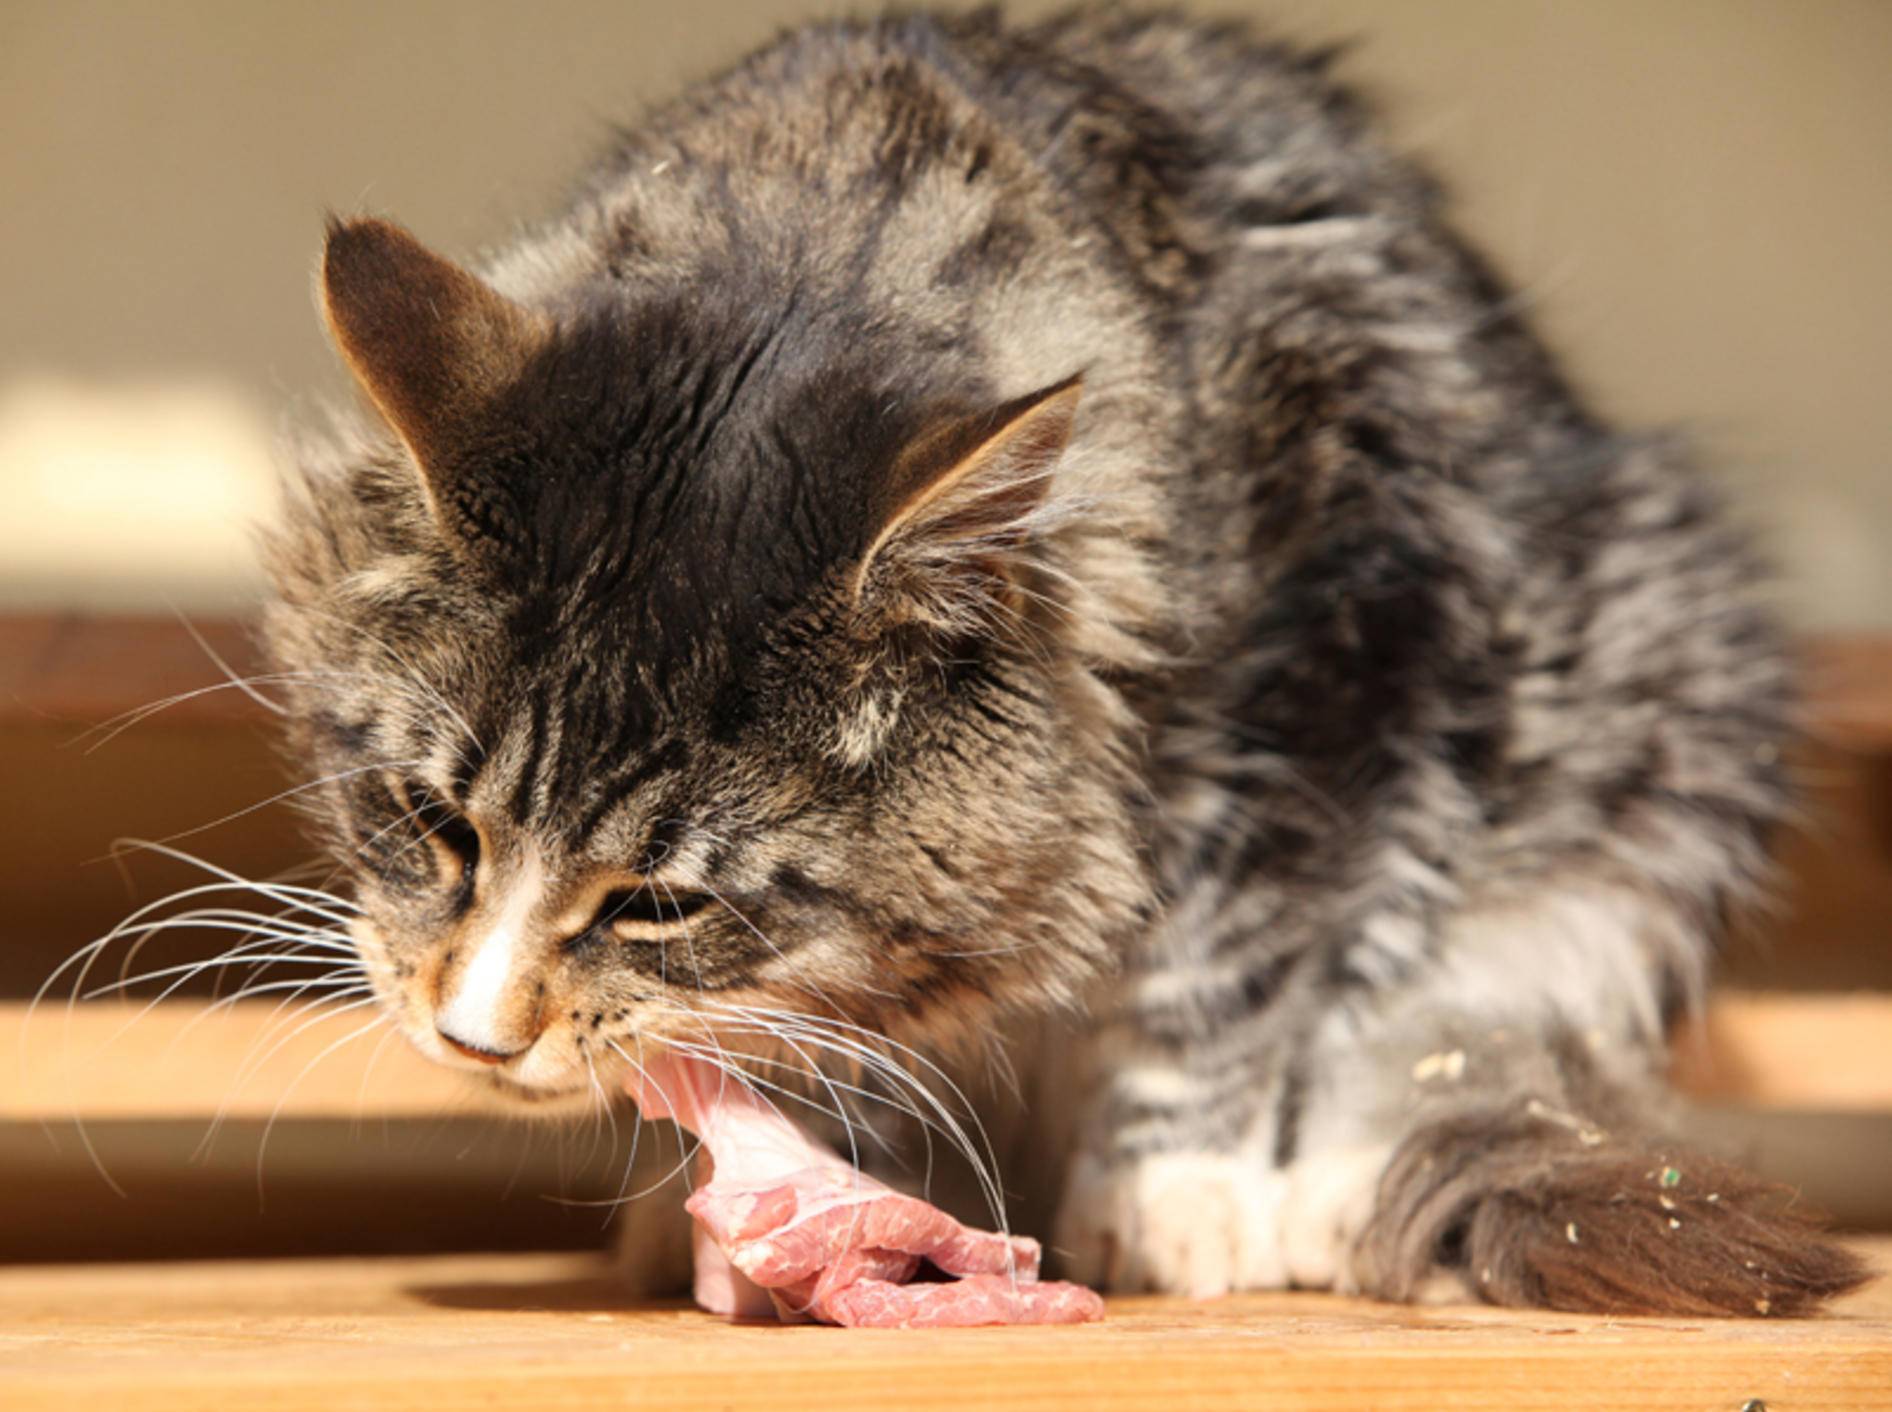 Beim Barfen bekommen Katzen rohes Fleisch zu fressen – Shutterstock / Zuzule